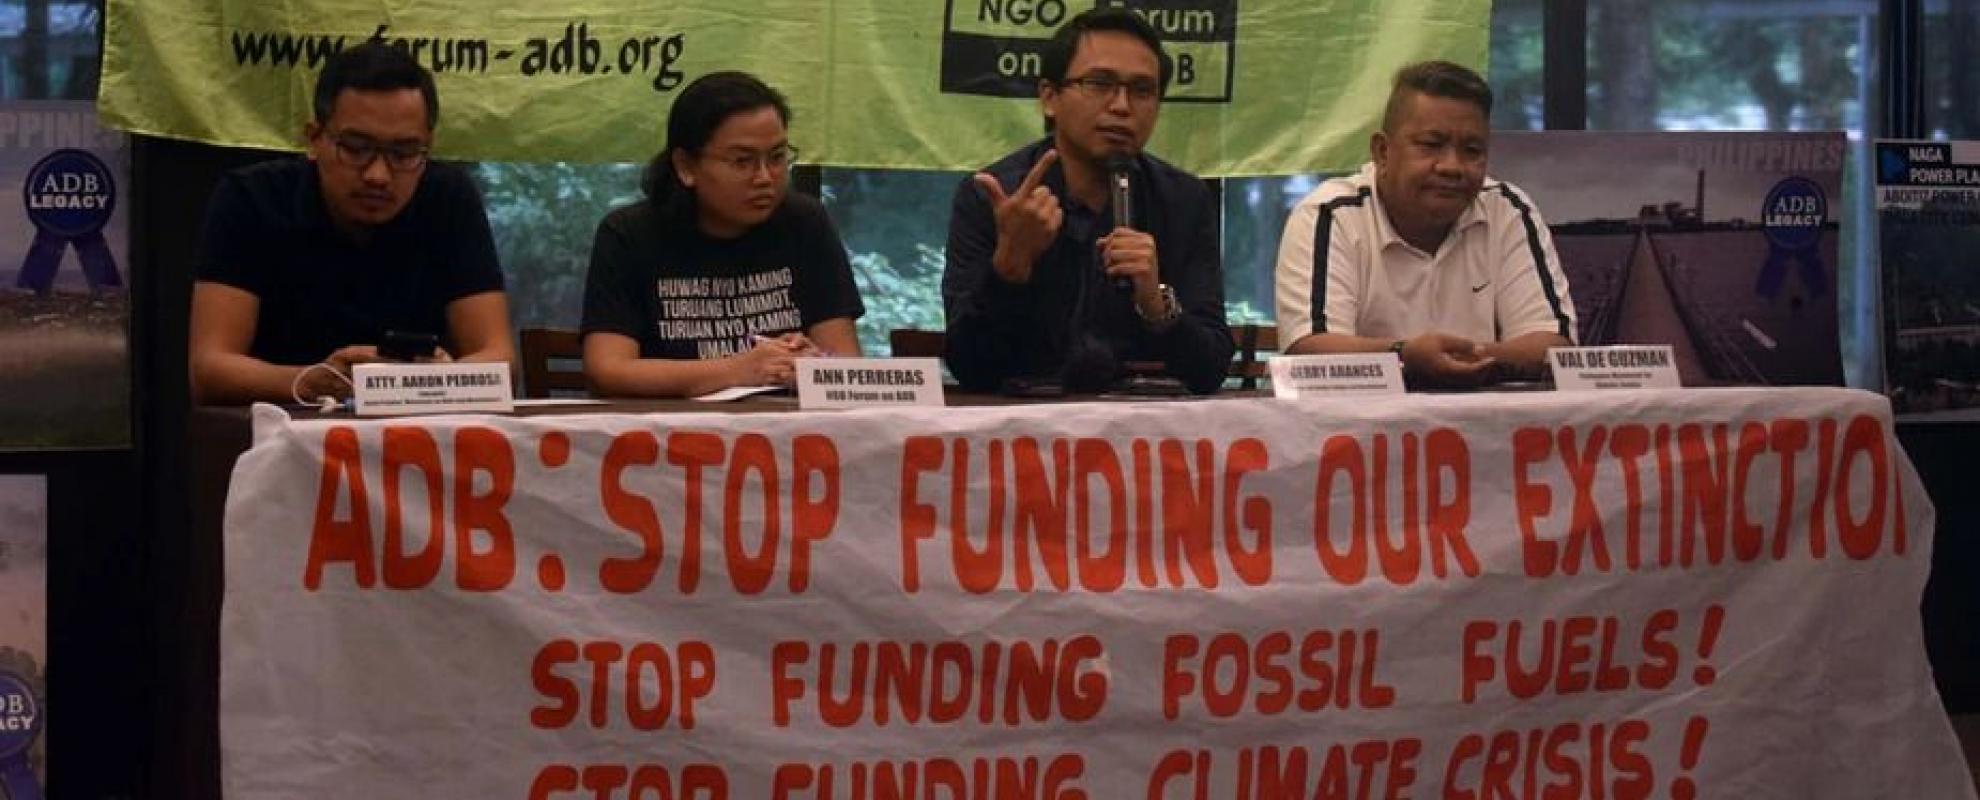 Meeting van het NGO-forum on ADB - Stop met het financieren van fossiele brandstoffen